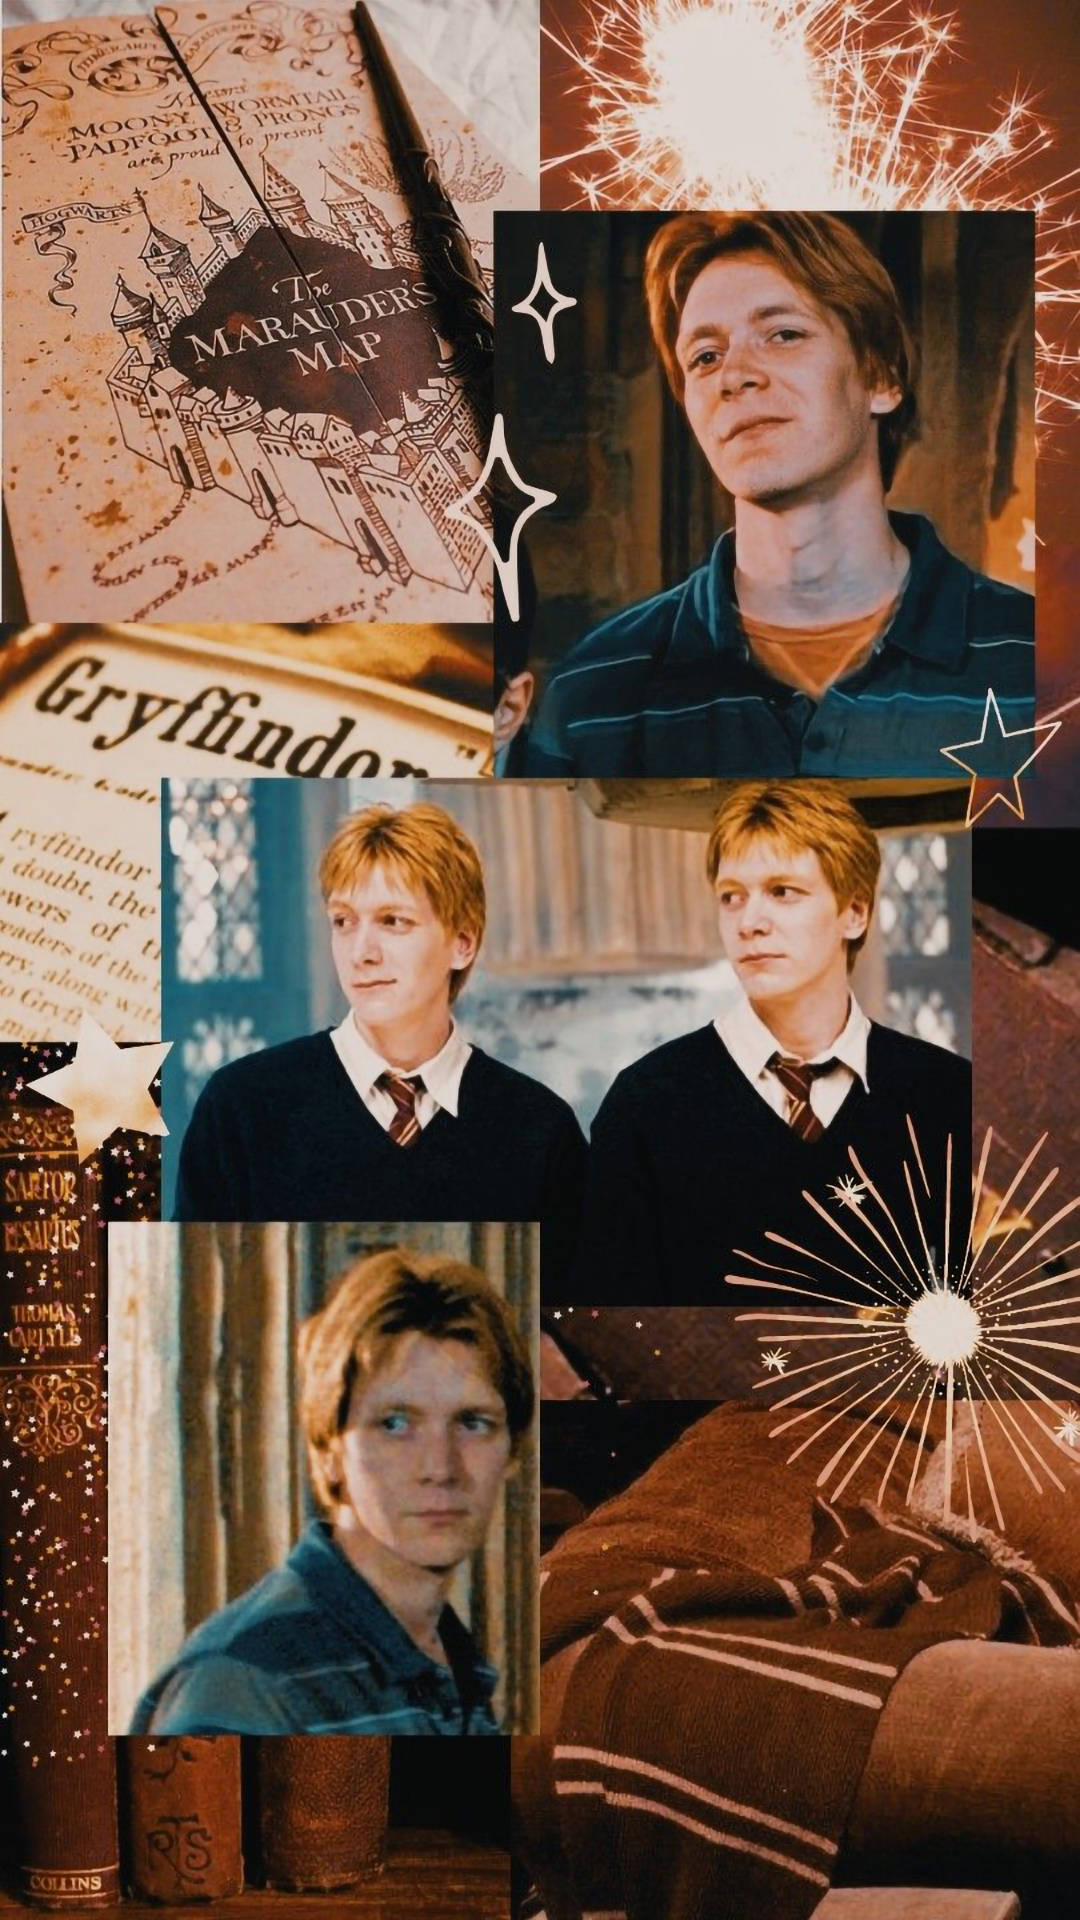 Aesthetic Harry Potter Weasley Twins Wallpaper